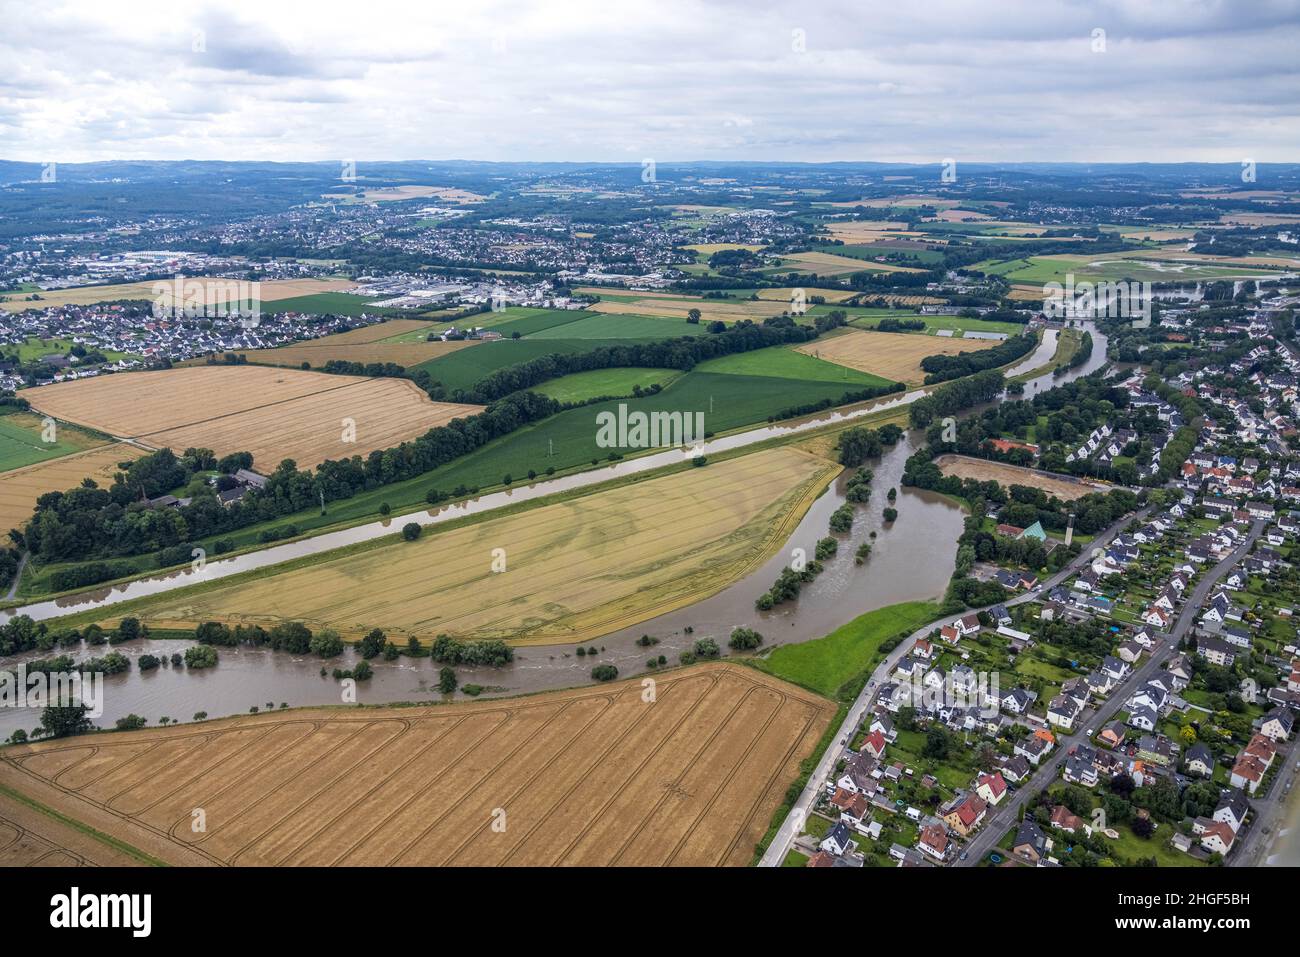 Vista aerea, alluvione della Ruhr, Fröndenberg, Fröndenberg/Ruhr, area della Ruhr, Renania settentrionale-Vestfalia, Germania, DE, Europa, vista degli uccelli, fotografia aerea, a Foto Stock